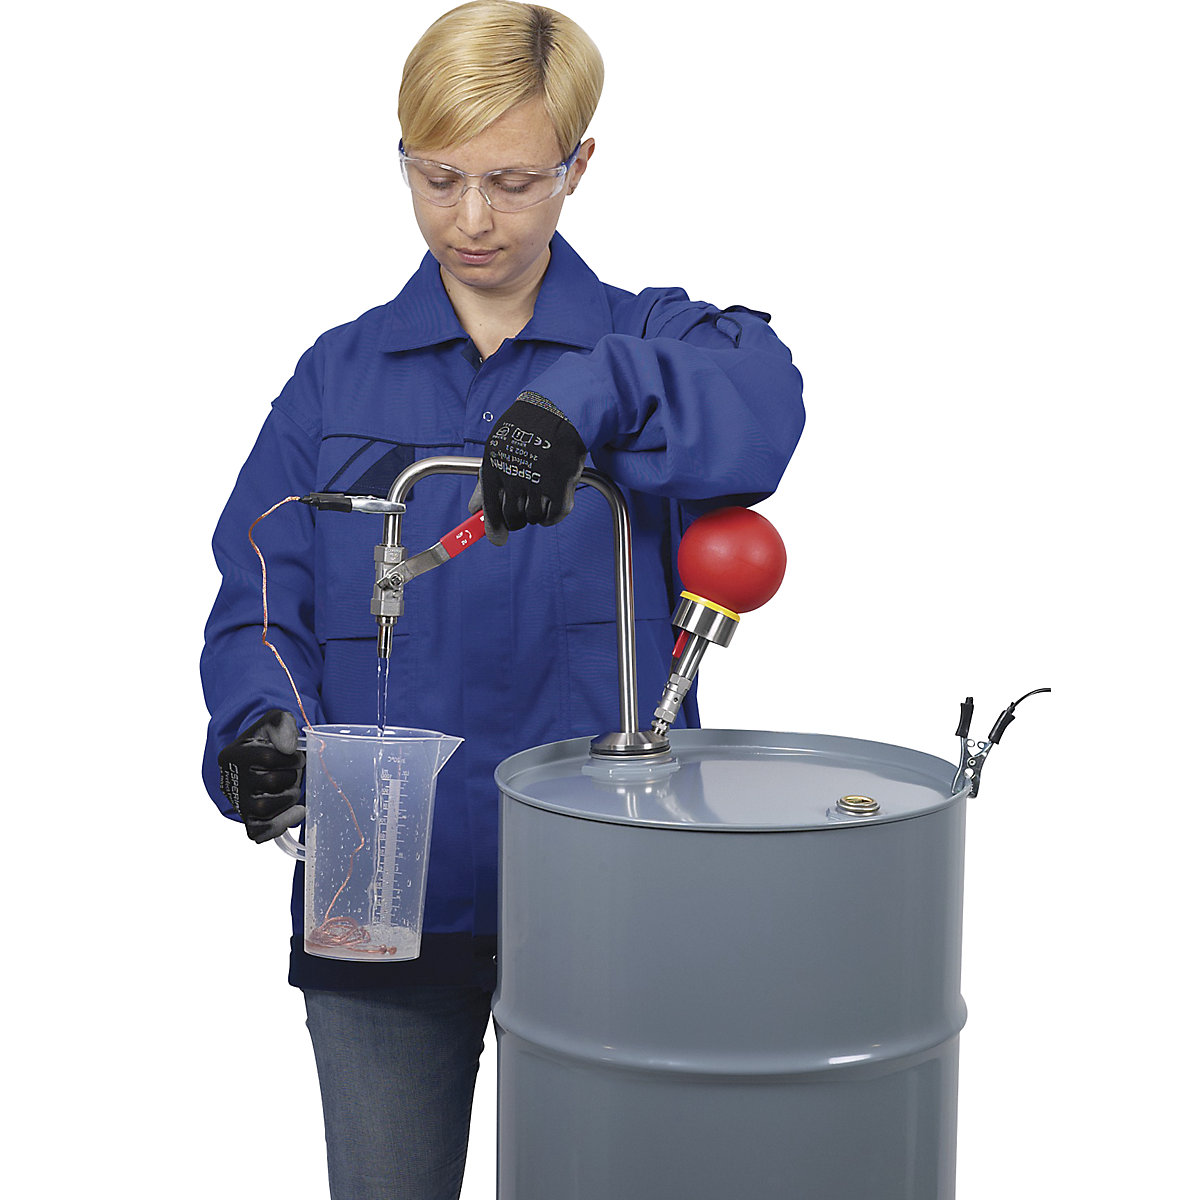 Črpalka za topila, iz nerjavnega jekla, upravljanje z roko (Slika izdelka 11)